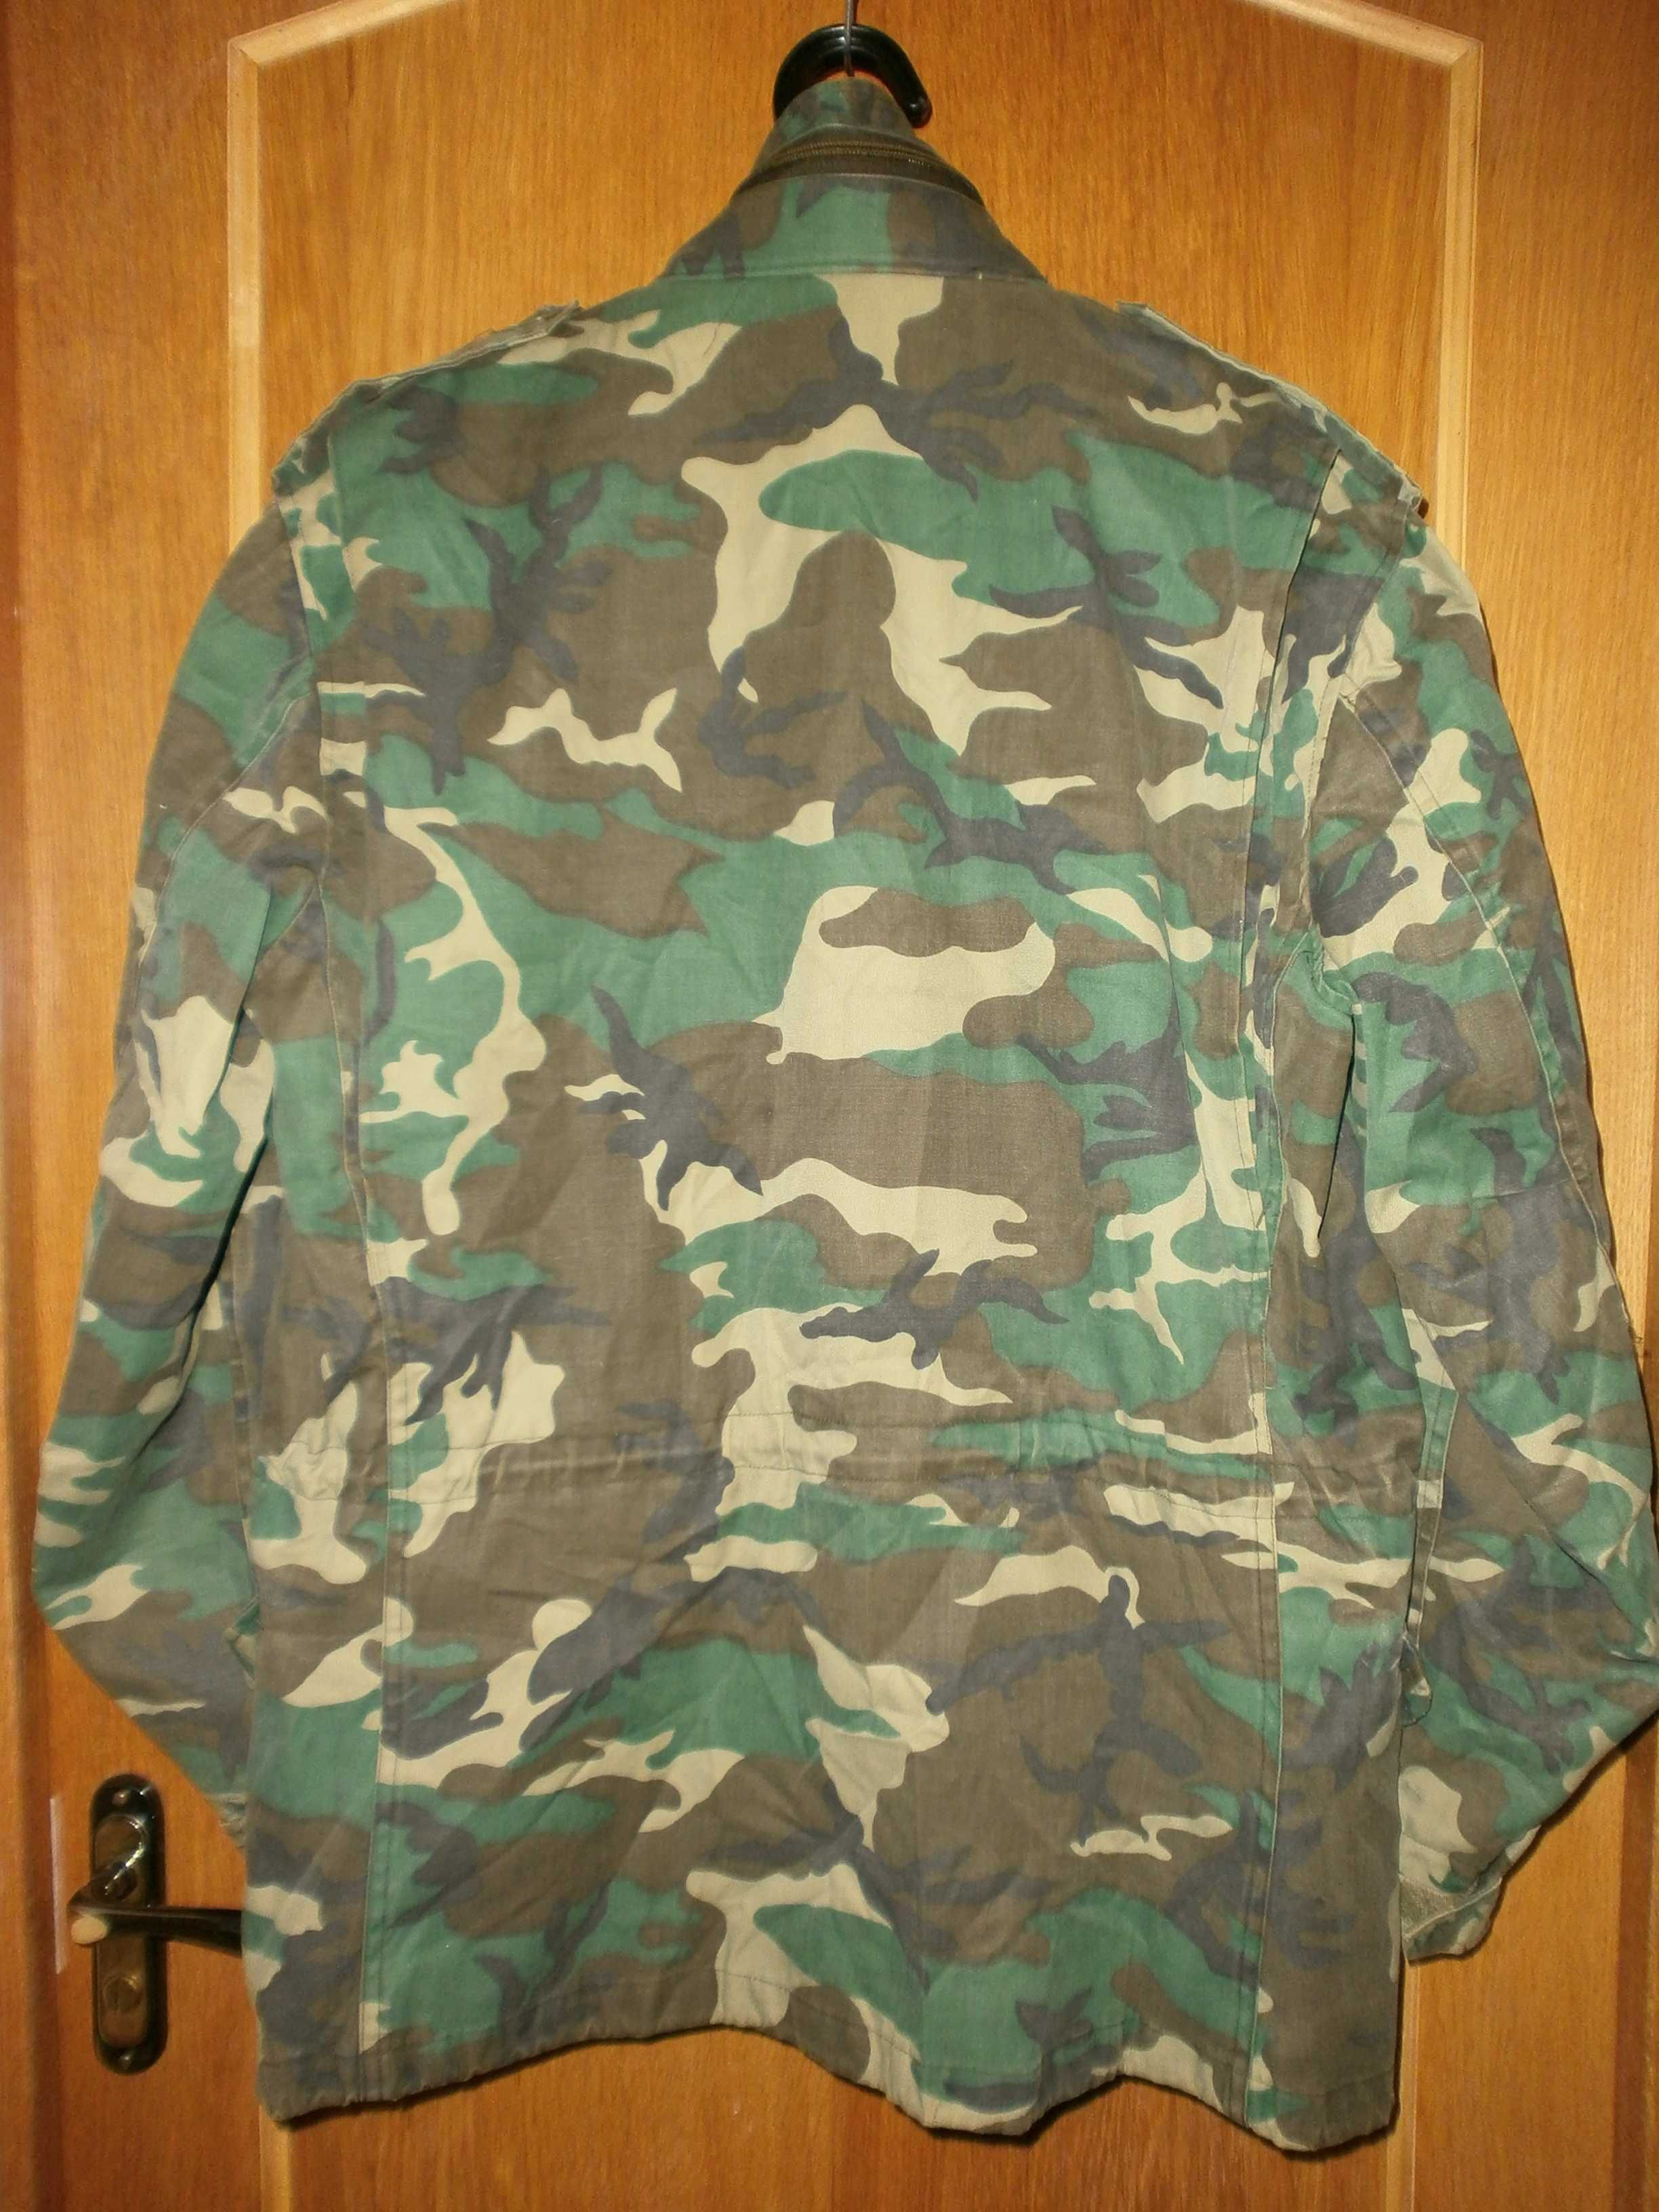 Куртка М65,Woodland, разм. Large-regular,наш 52. ПОГ-62 см. С лайнером